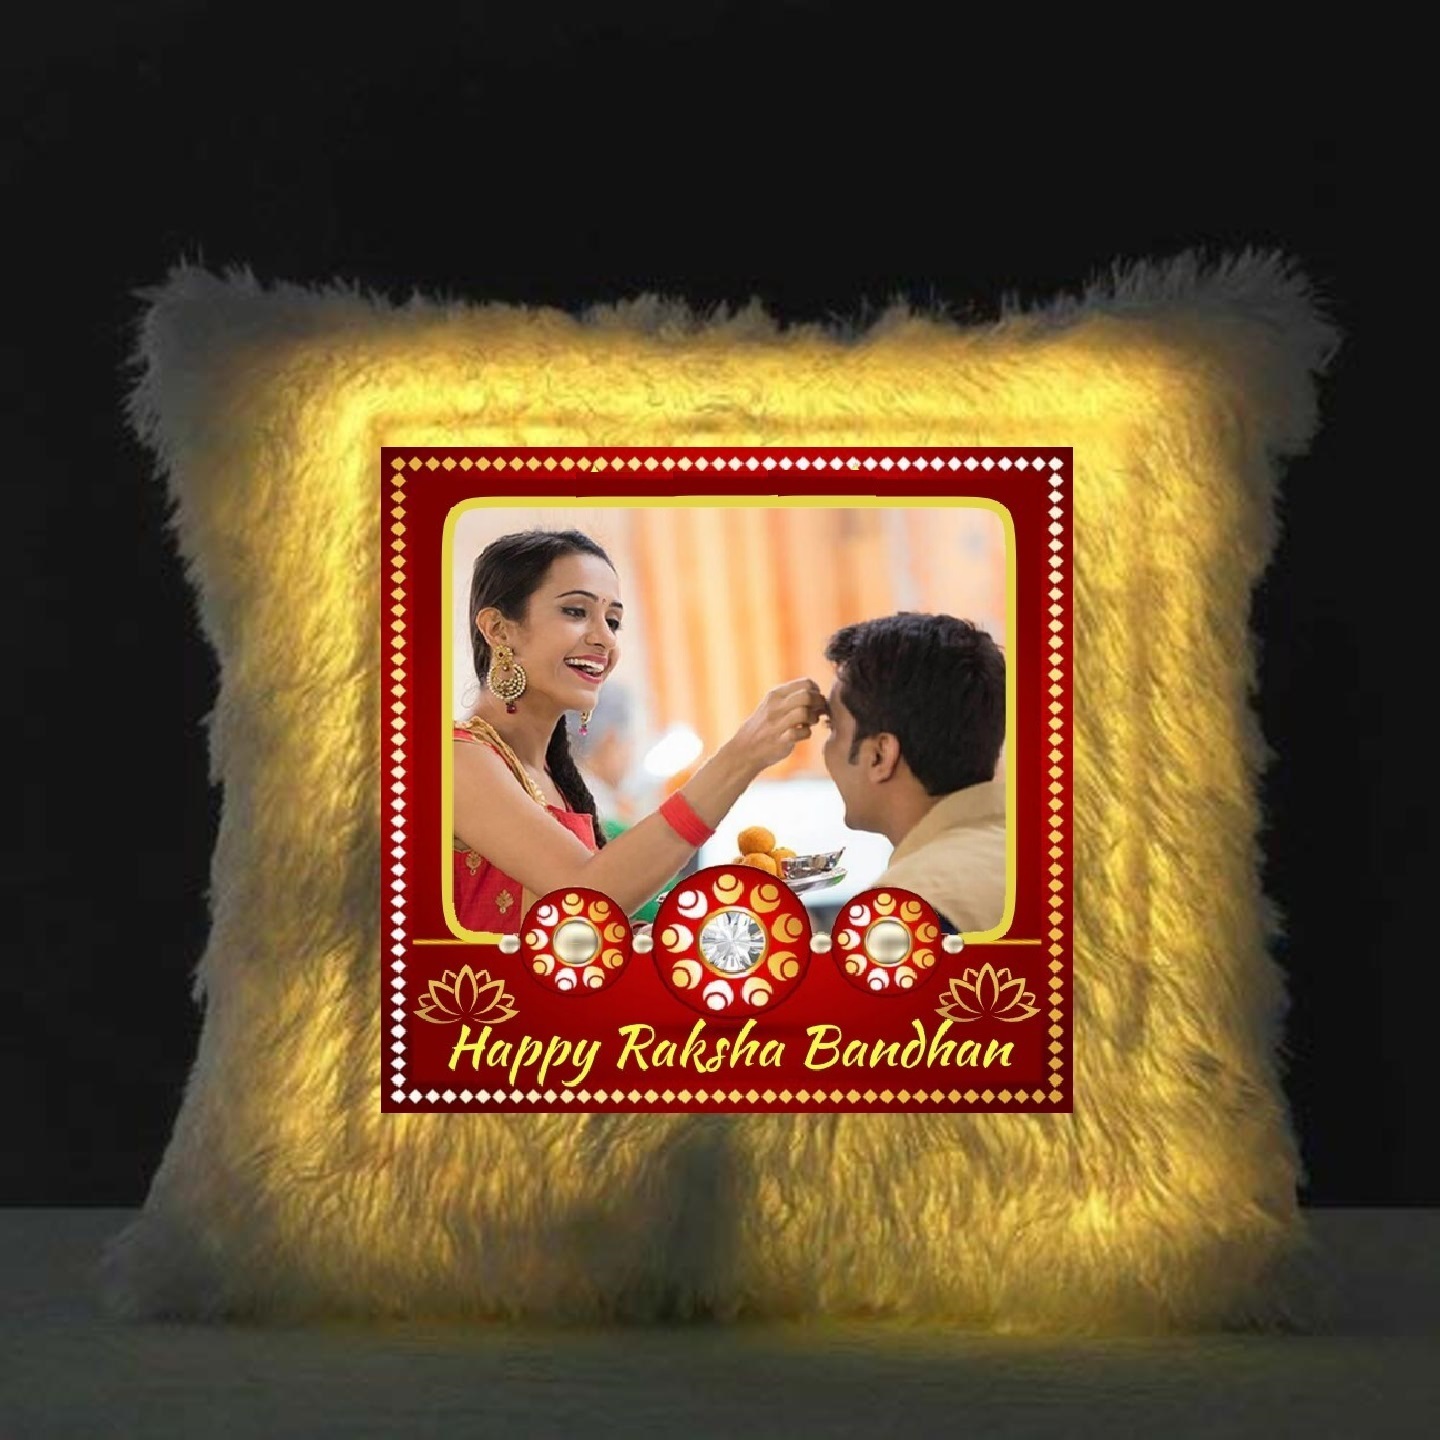 Customized Rakshabandhan LED Cushion with your photo